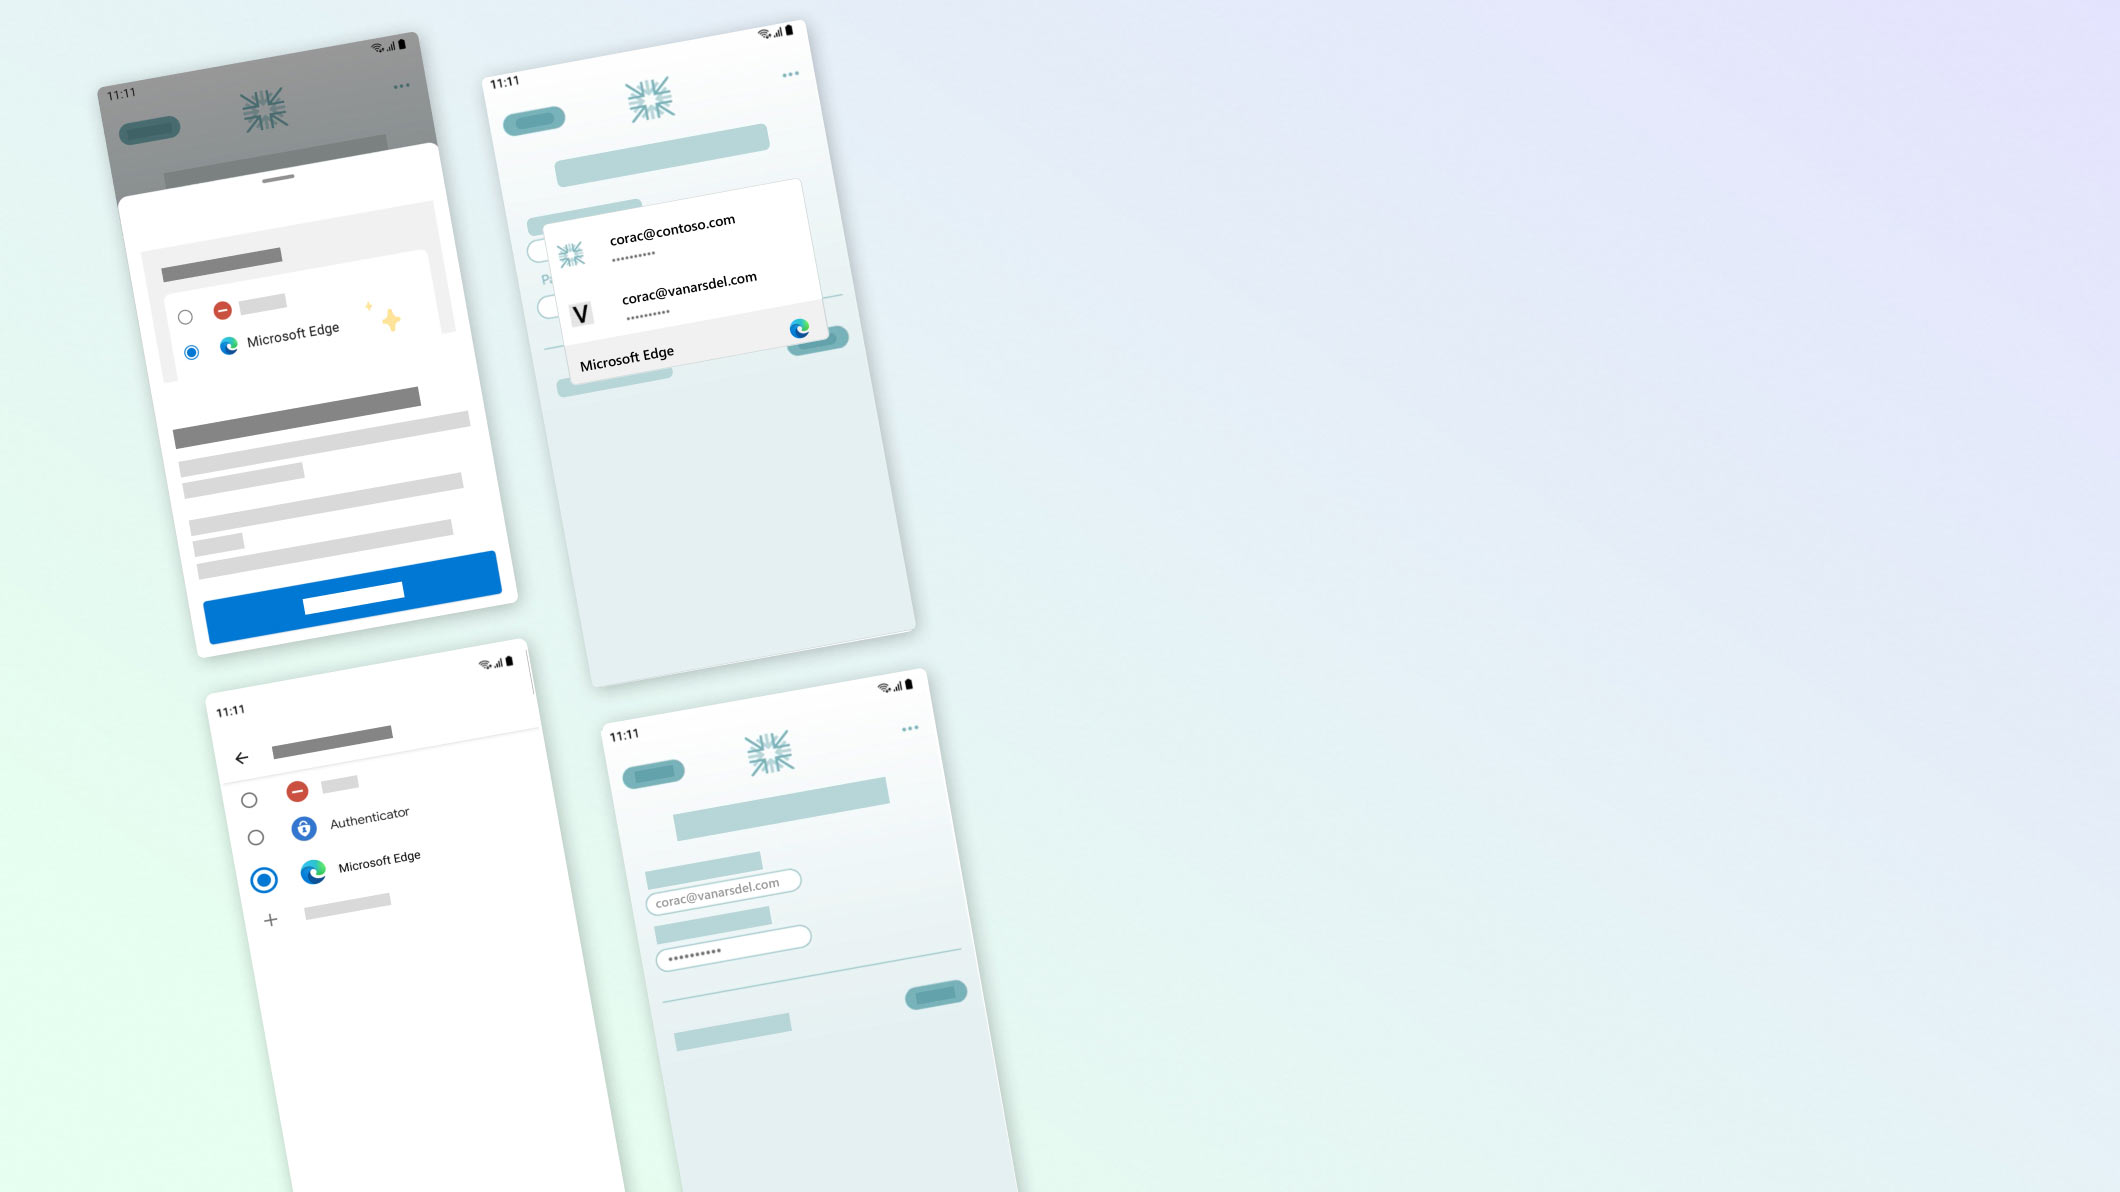 Mehrere Bildschirme auf Mobilgeräten mit Kennwort und Einstellungen für das automatische Ausfüllen, einschließlich Biometrie- und LinkedIn-Anmeldeoptionen